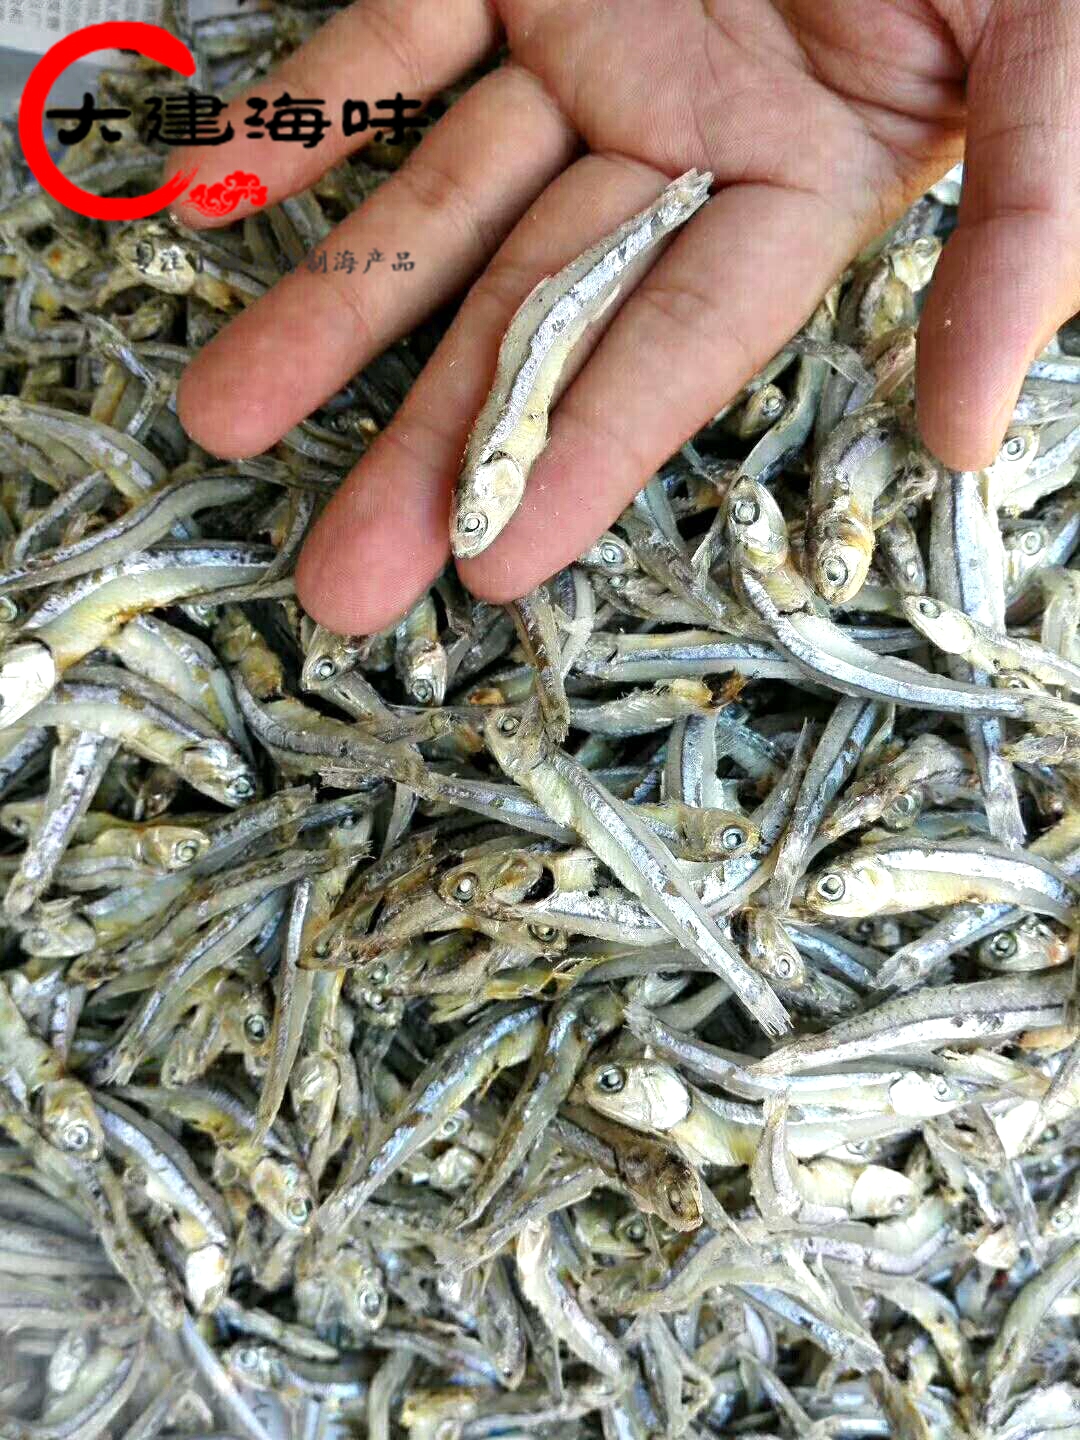 广东潮汕尾碣石特产小海鱼尧鱼仔250g银鱼干海鲜干货水产海味咸鱼